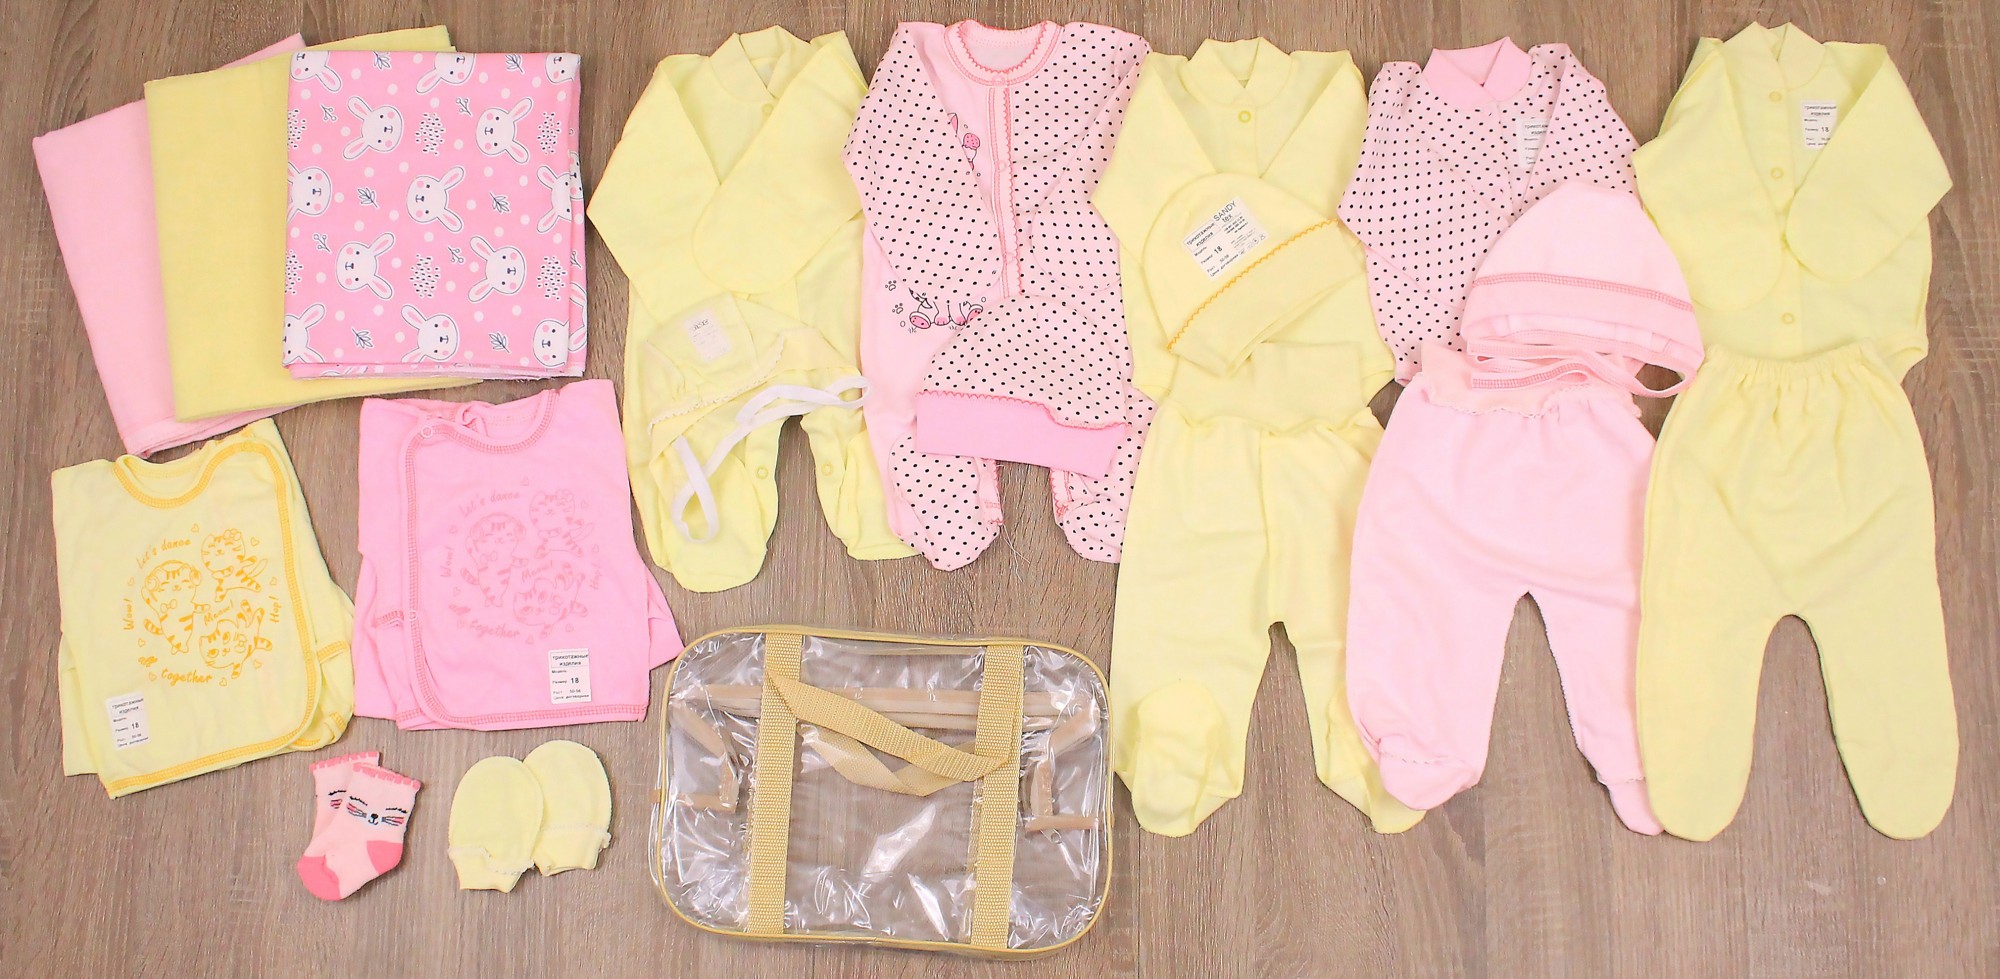 

Большой набор одежды в роддом для новорожденного в сумке (20 предметов) 3120104 56 см Розовый и Желтый (3140105)